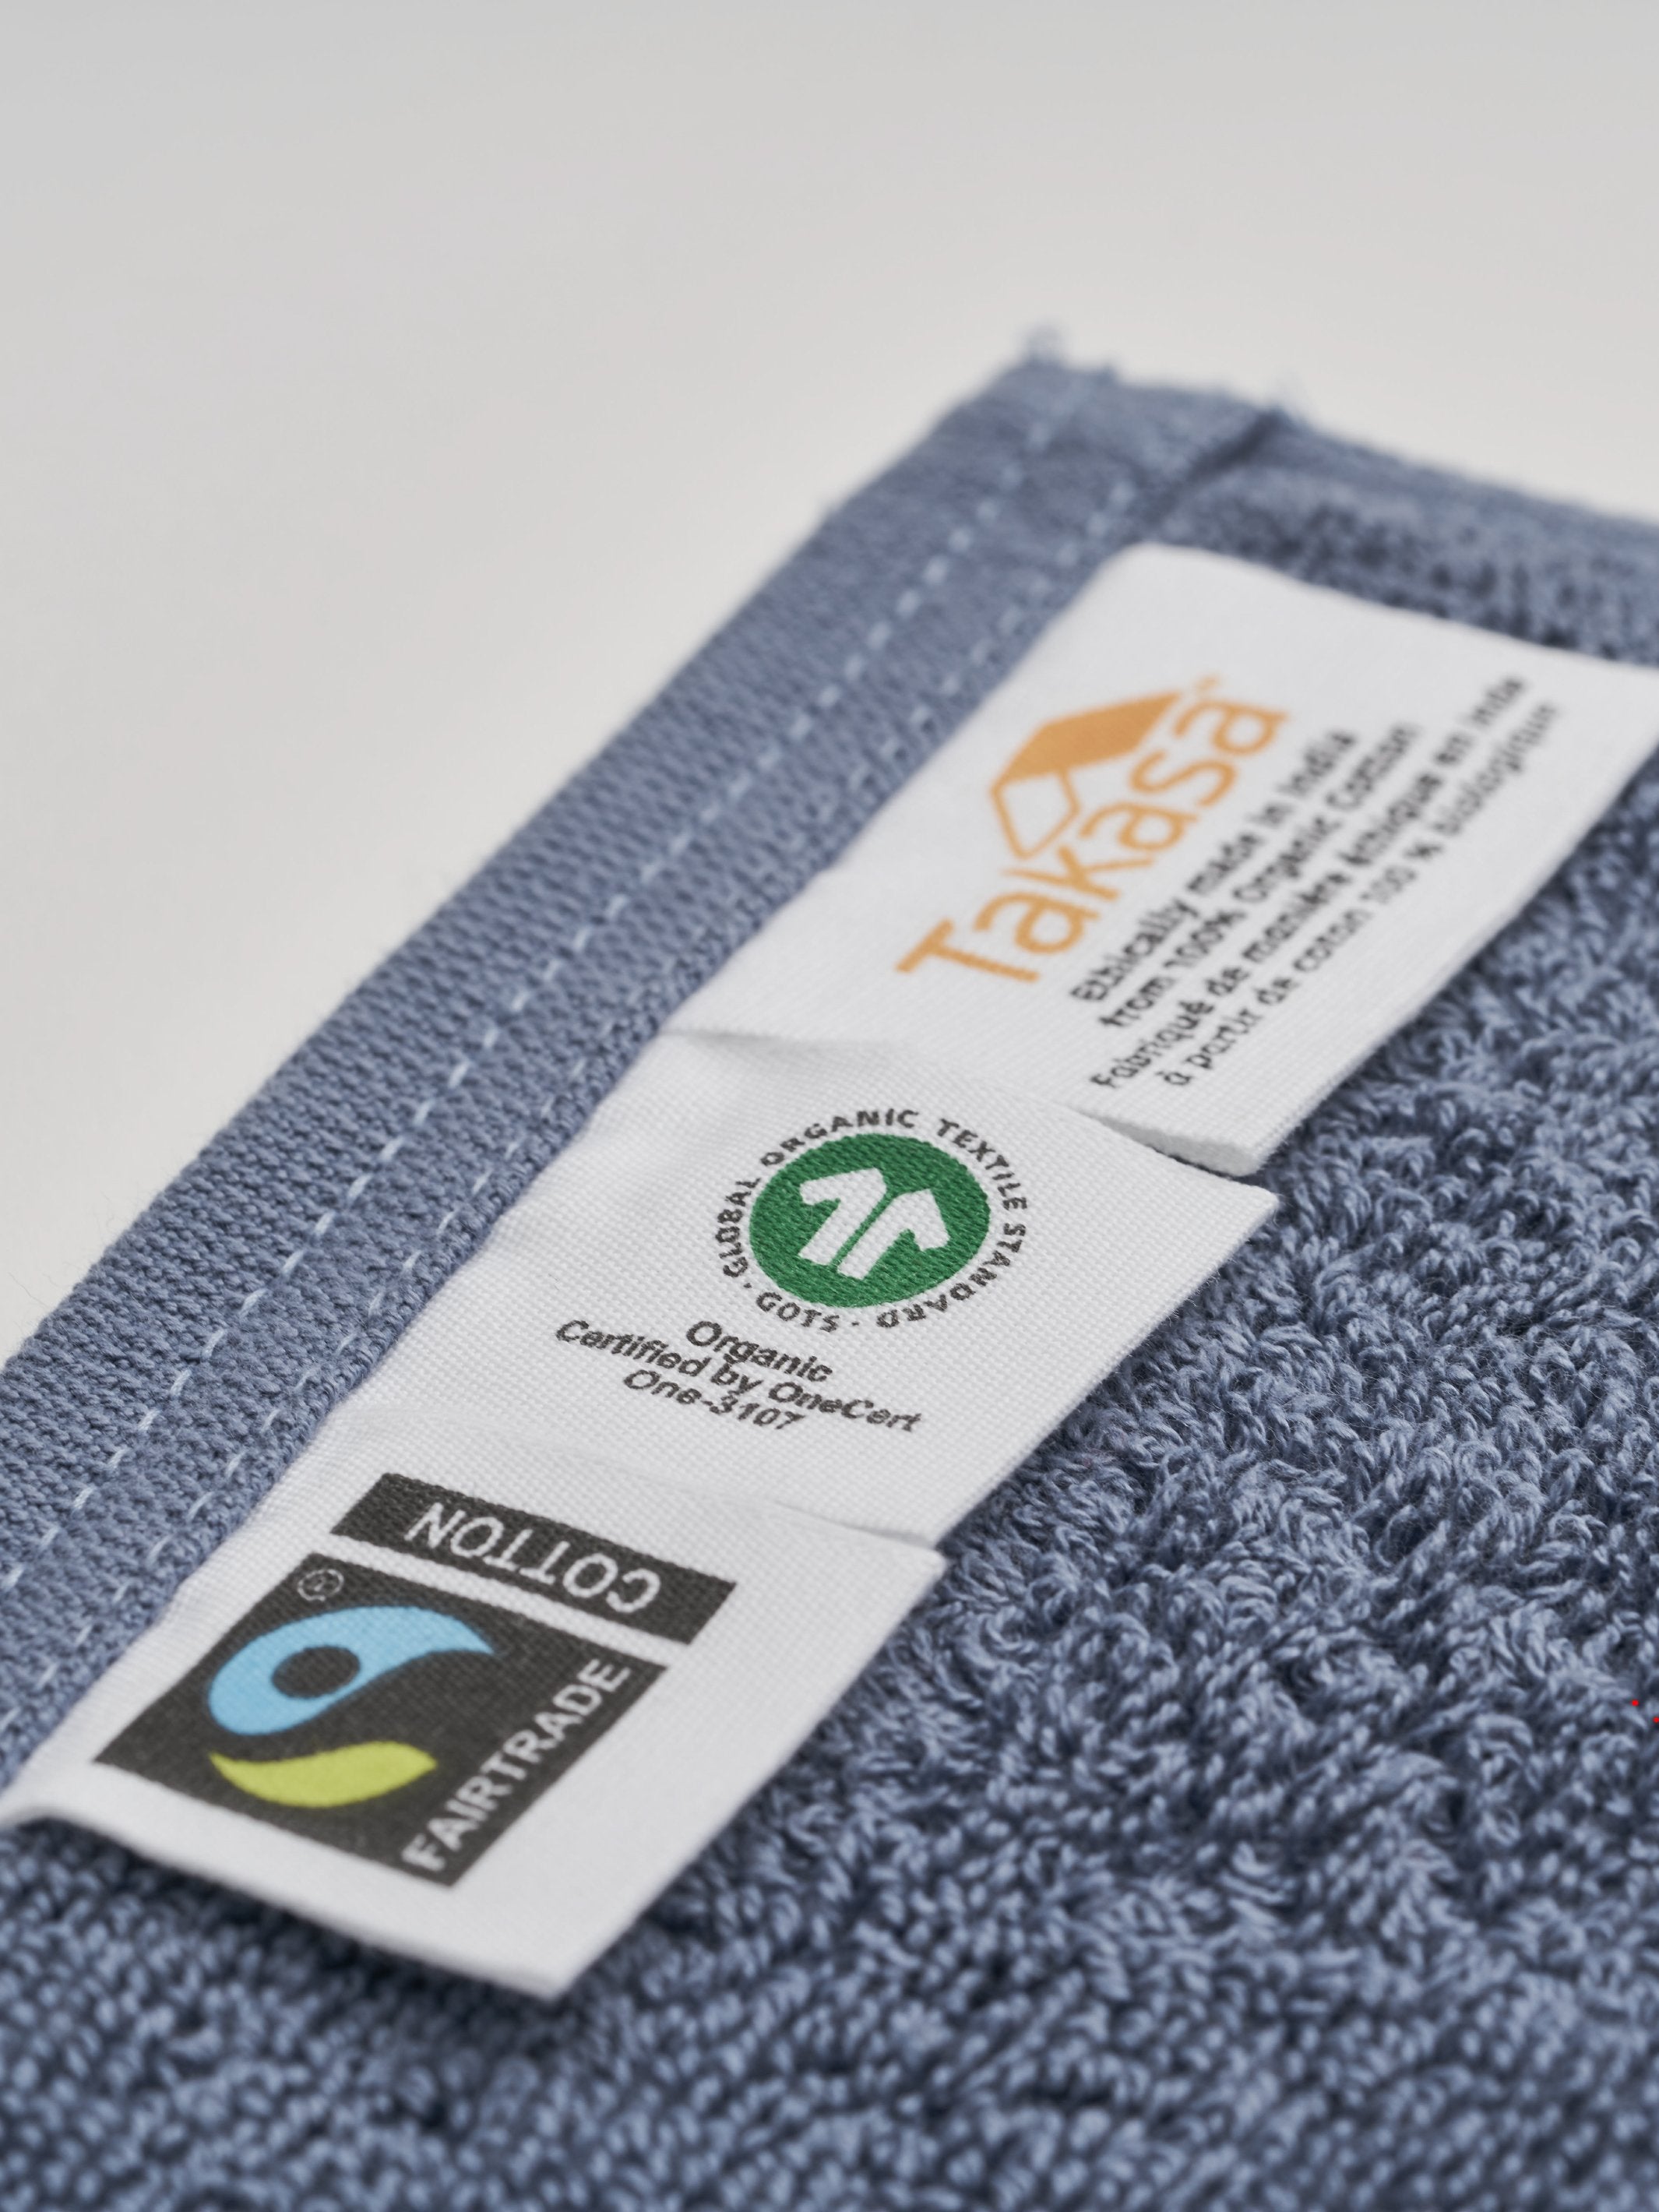 Bath Towels 100% Natural Organic Cotton Fair Trade Ethical